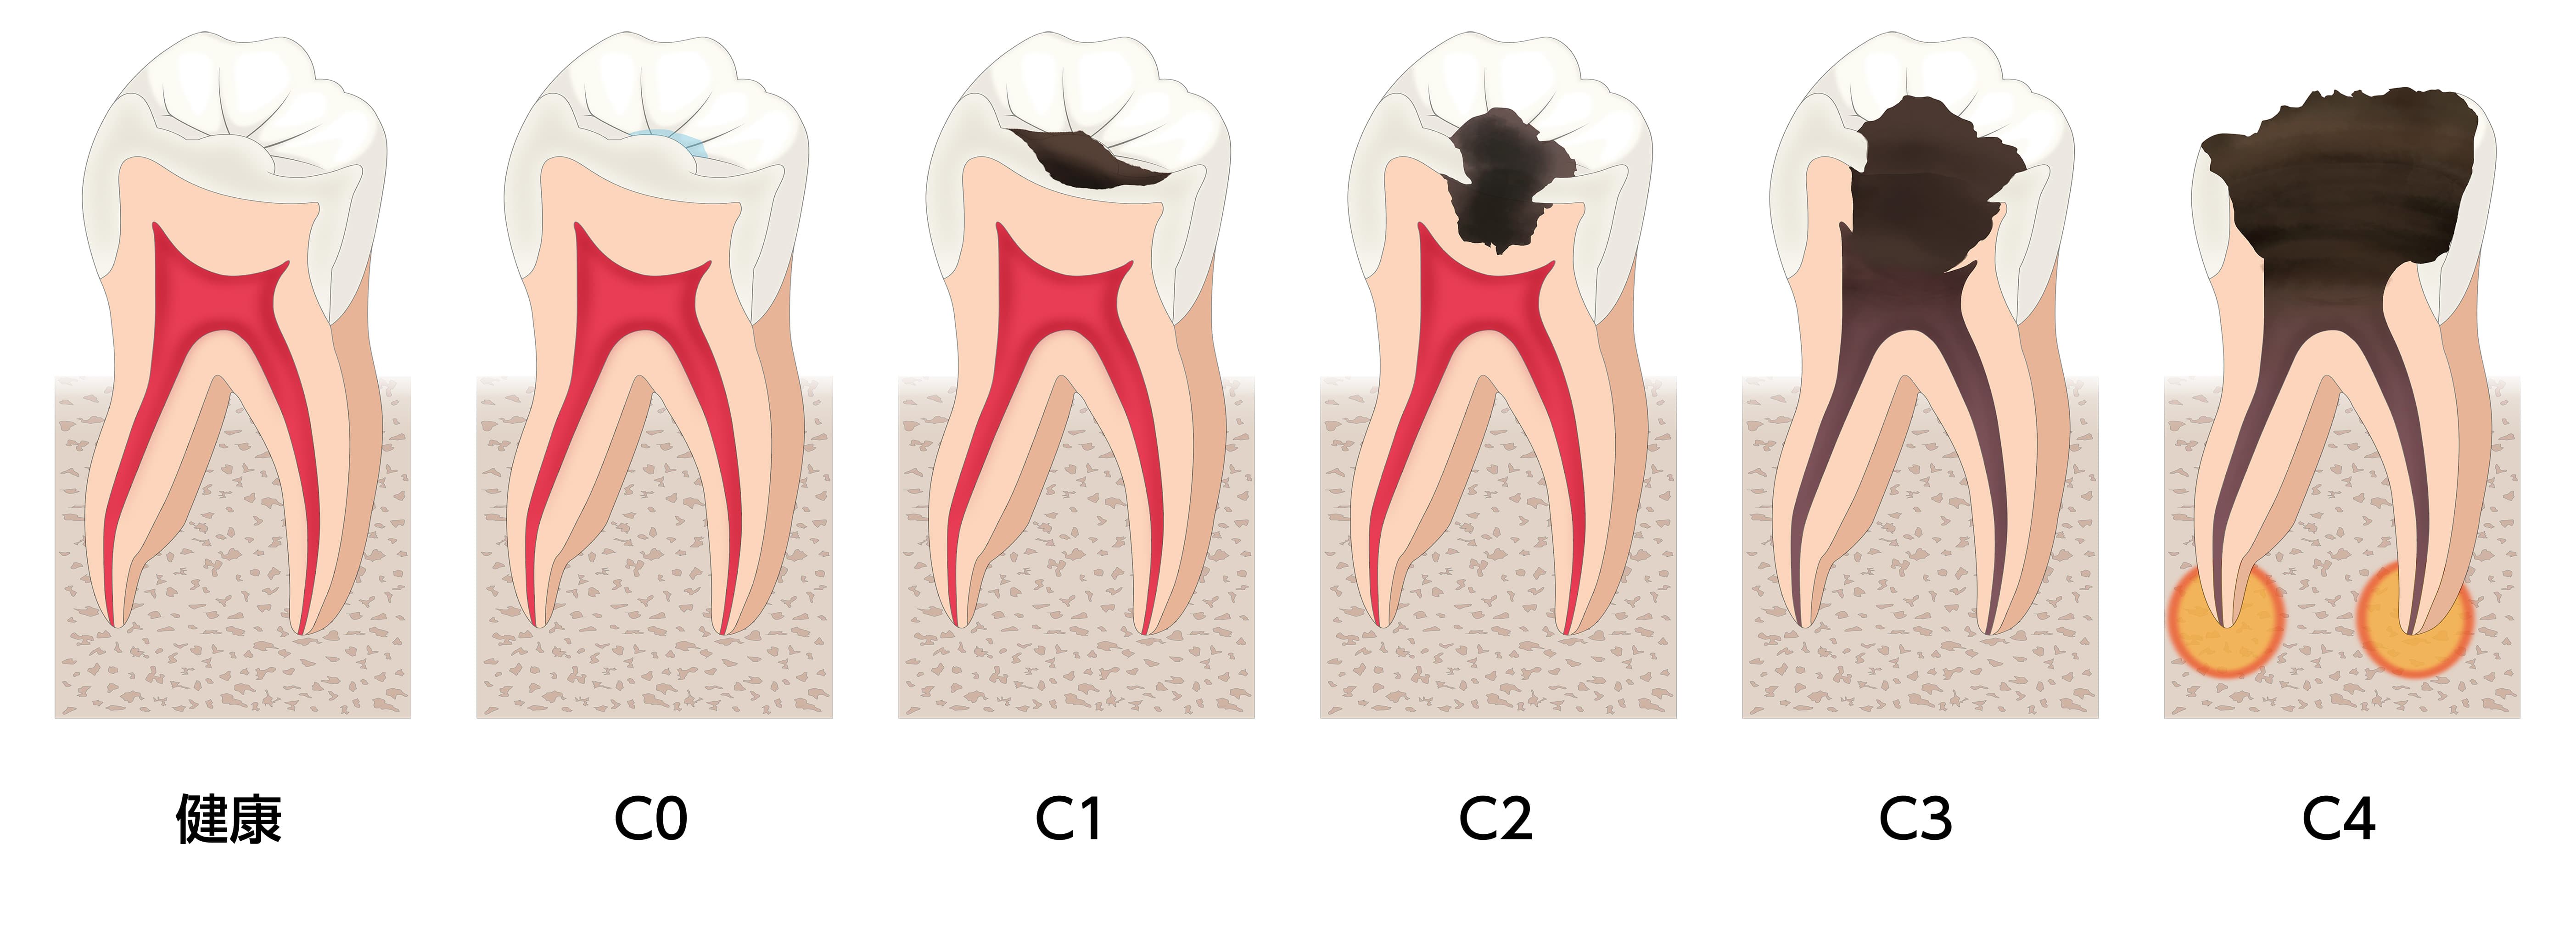 虫歯の進行度